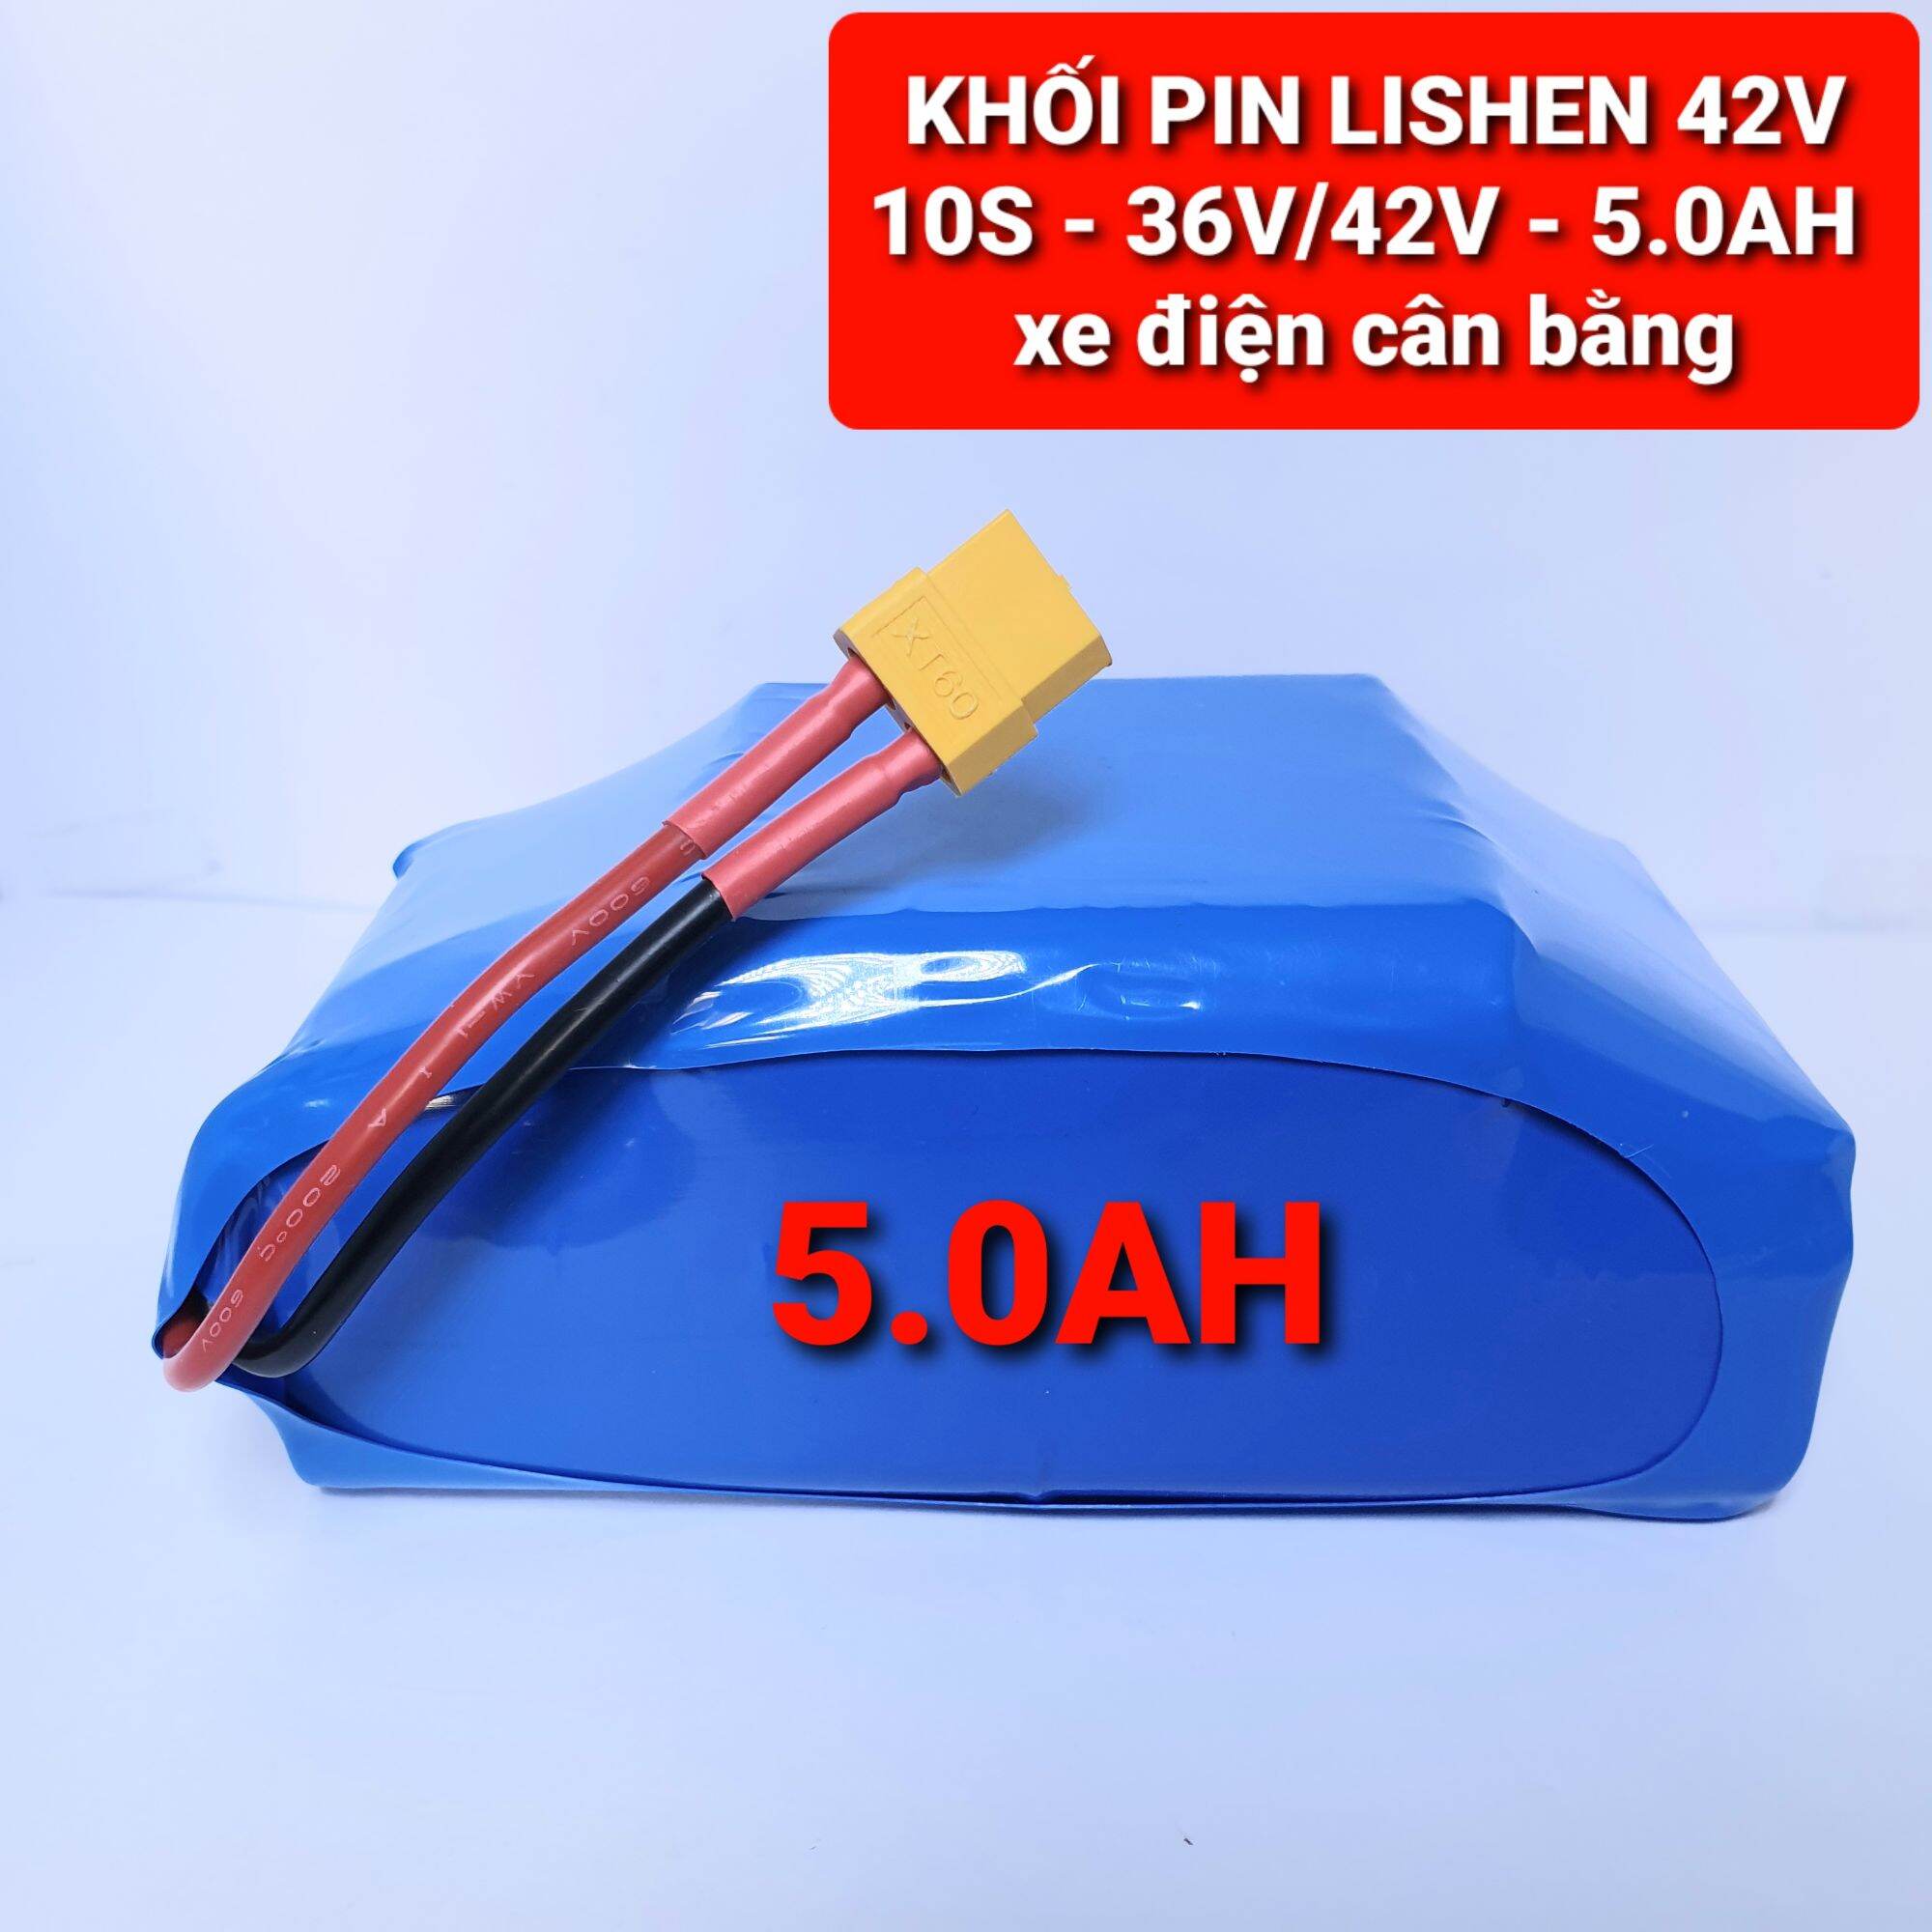 Bảng giá Achun.vn - KHỐI PIN LISHEN - 10S - 5.0Ah - 36V/42V xe điện cân bằng